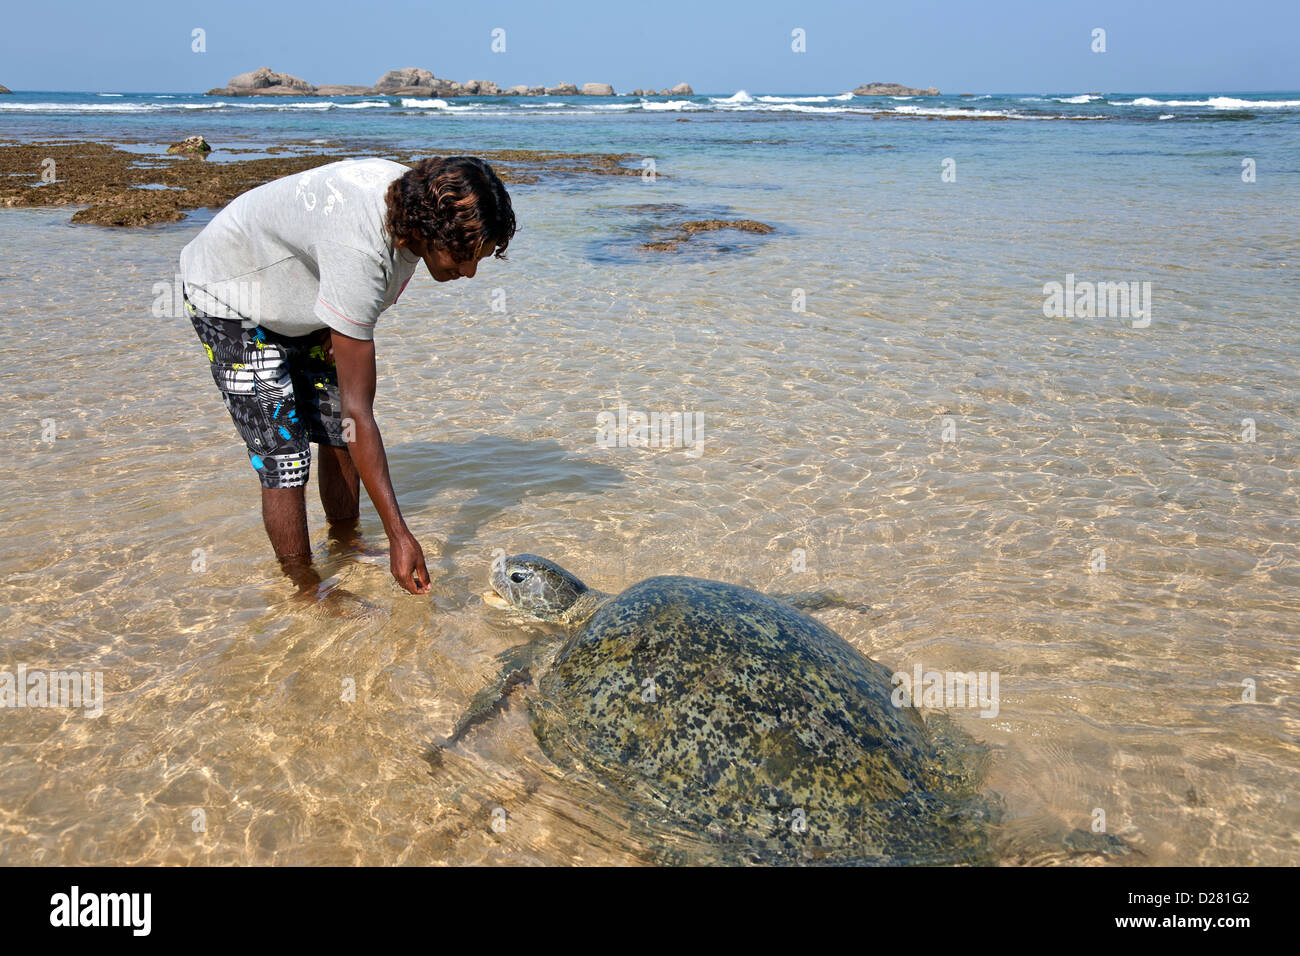 L'uomo gioca con una tartaruga di mare. Hikkaduwa beach. Sri Lanka Foto Stock